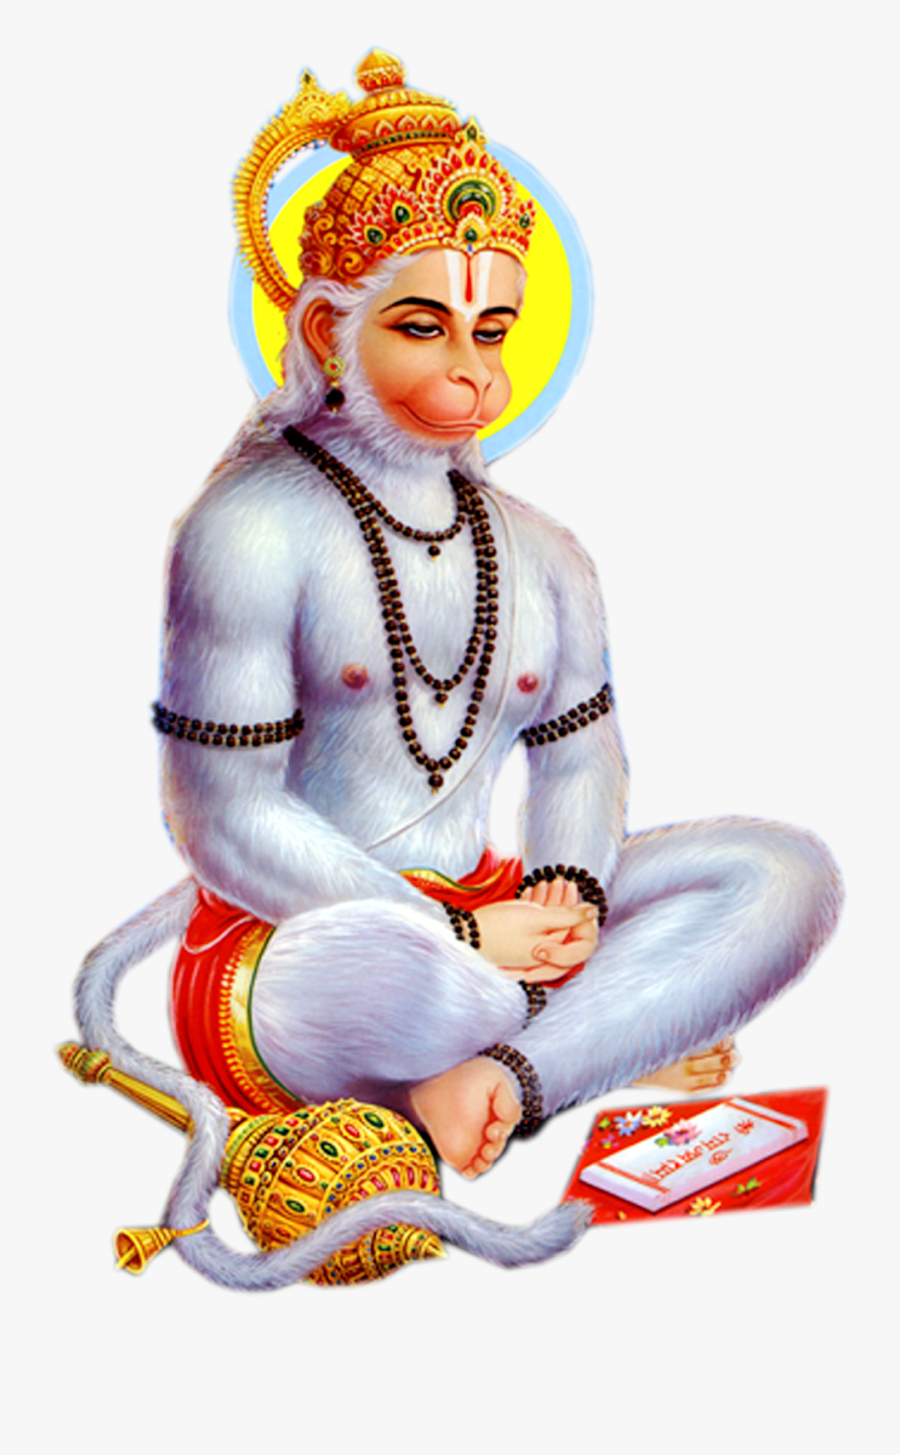 Pngforall - Hanuman Png, Transparent Clipart